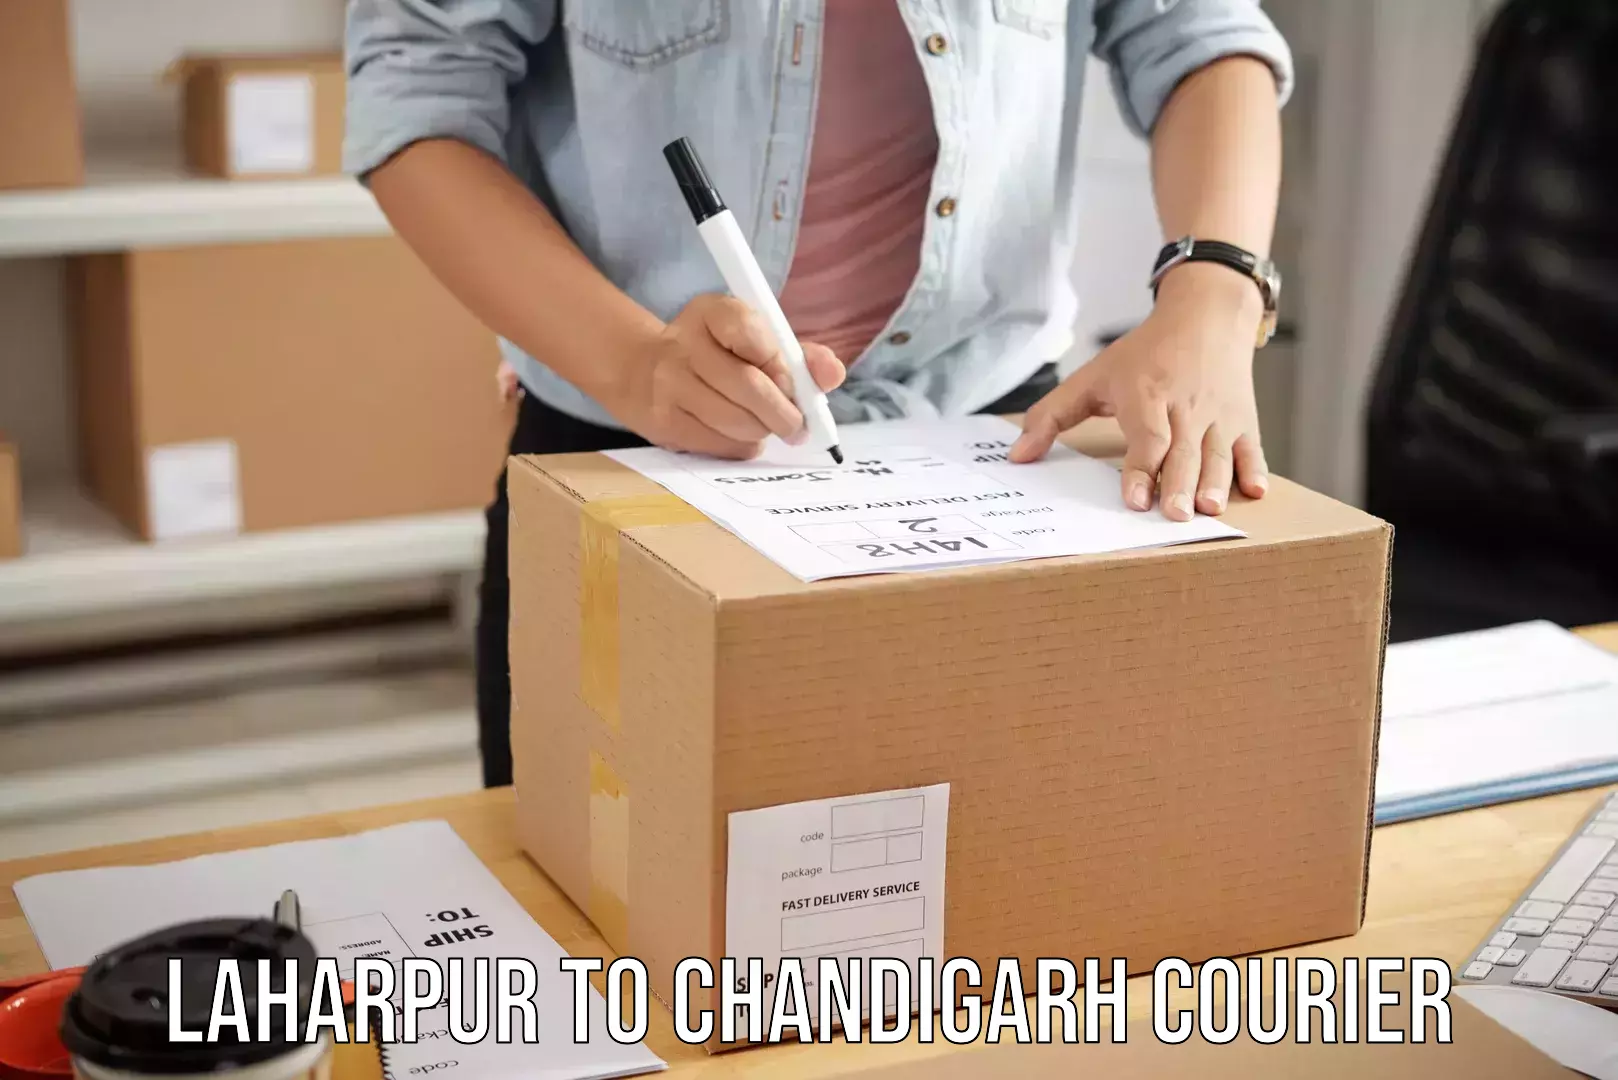 Urgent luggage shipment Laharpur to Chandigarh